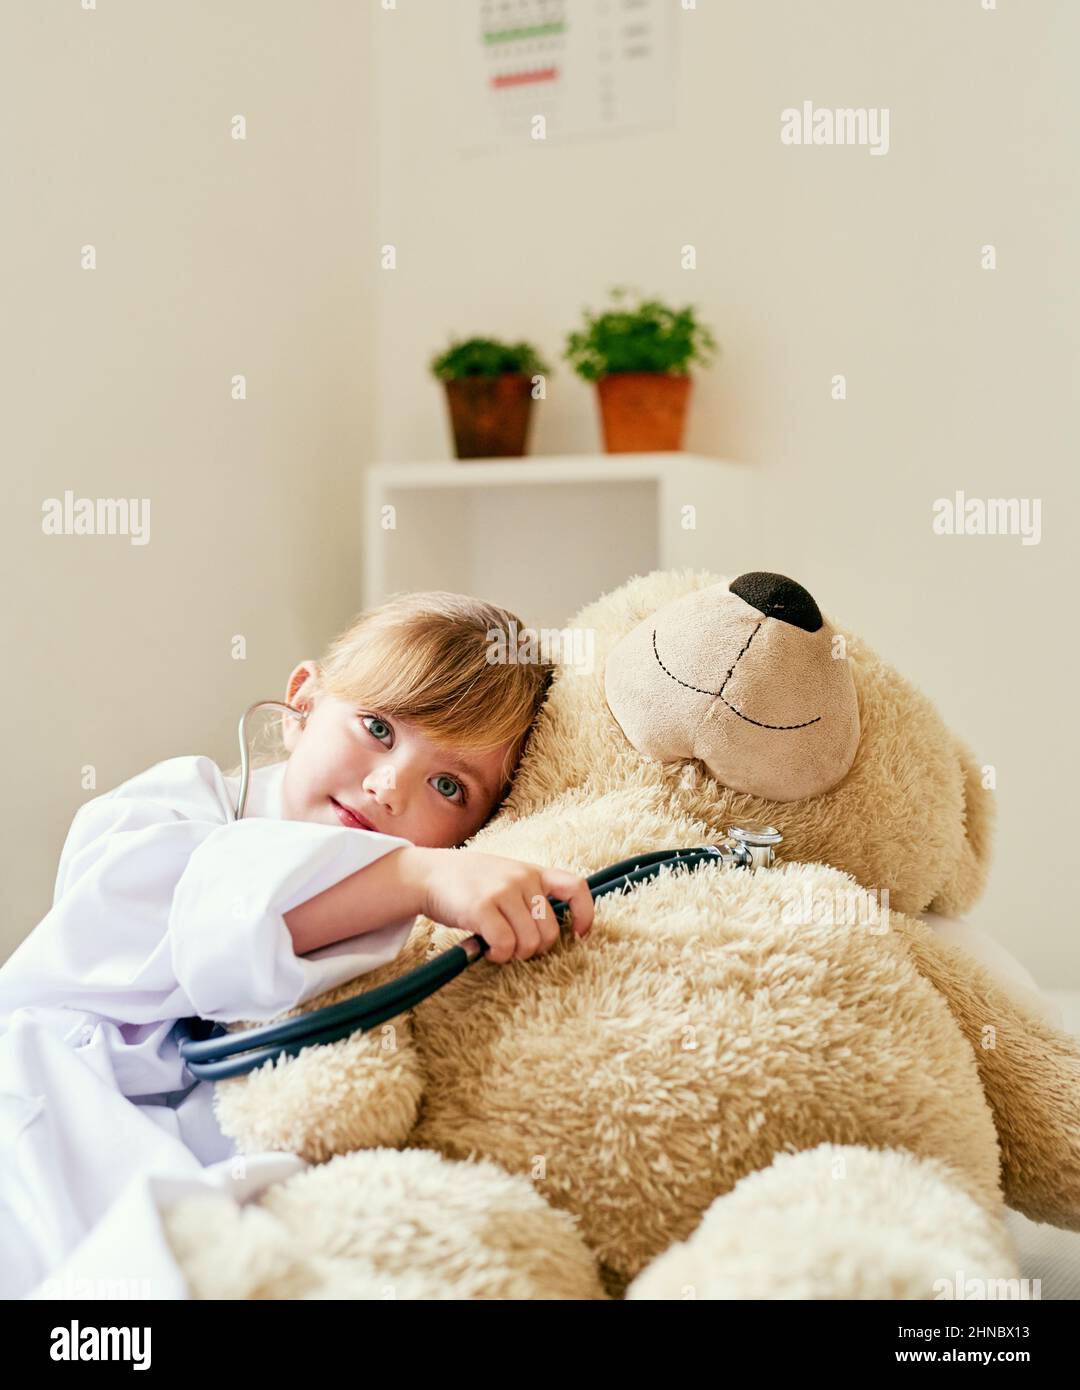 Imparare circa l'importanza della salute del cuore con il teddy. Shot di una bambina adorabile vestita come medico e l'esame di un orsacchiotto con un Foto Stock